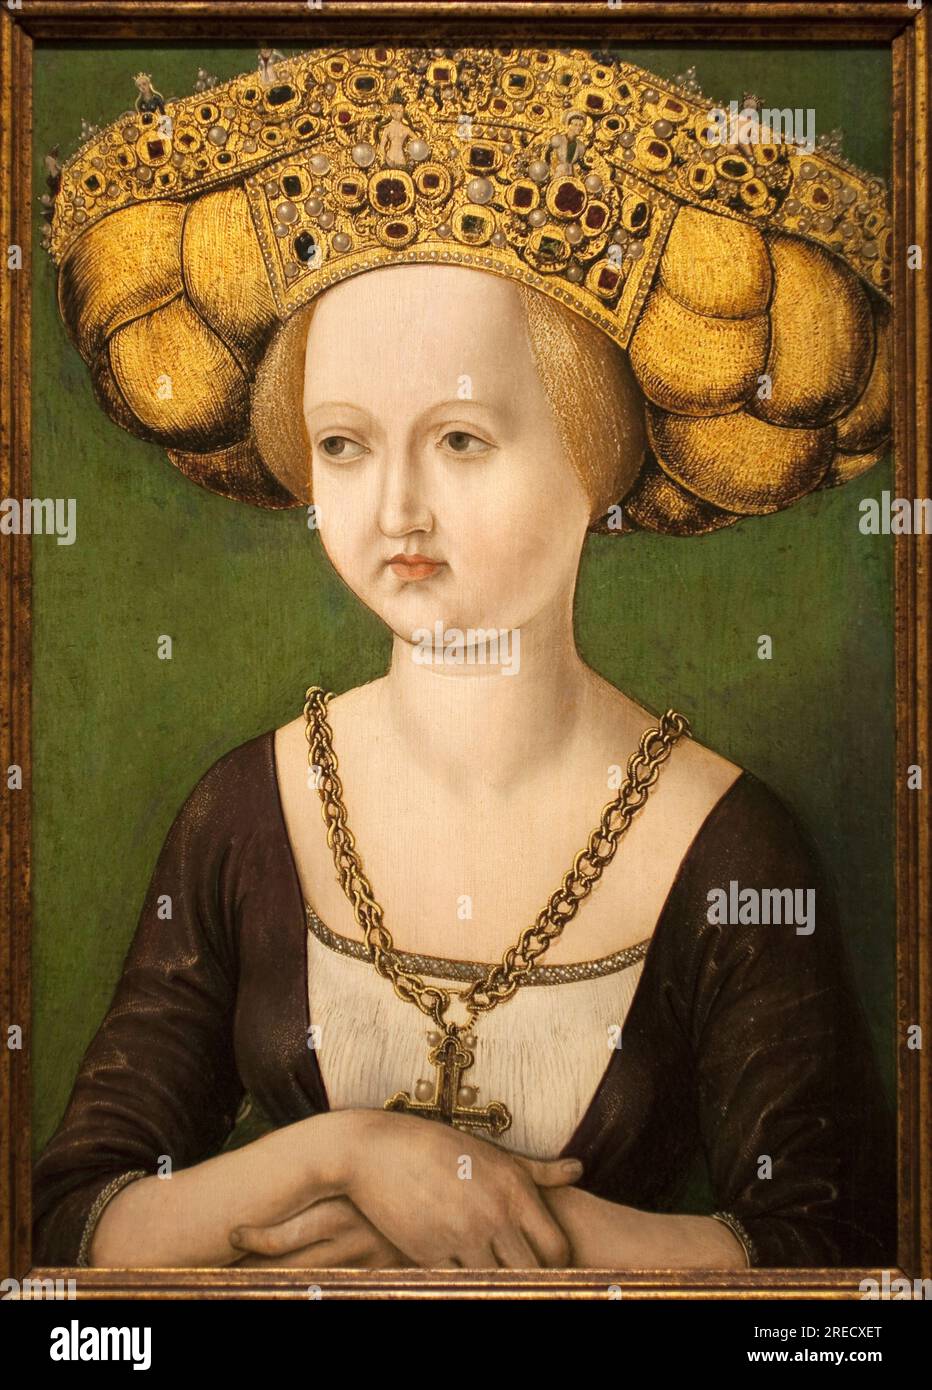 Portrait de Cunegonde d'Autriche (1465-1520) (Kunigunde d'Autriche) (Cunegonda d'Autriche). Peinture d'un anonyme, huile sur bois, vers 1584. Musée national des Arts de Catalogne, Barcelone (Espagne). Banque D'Images